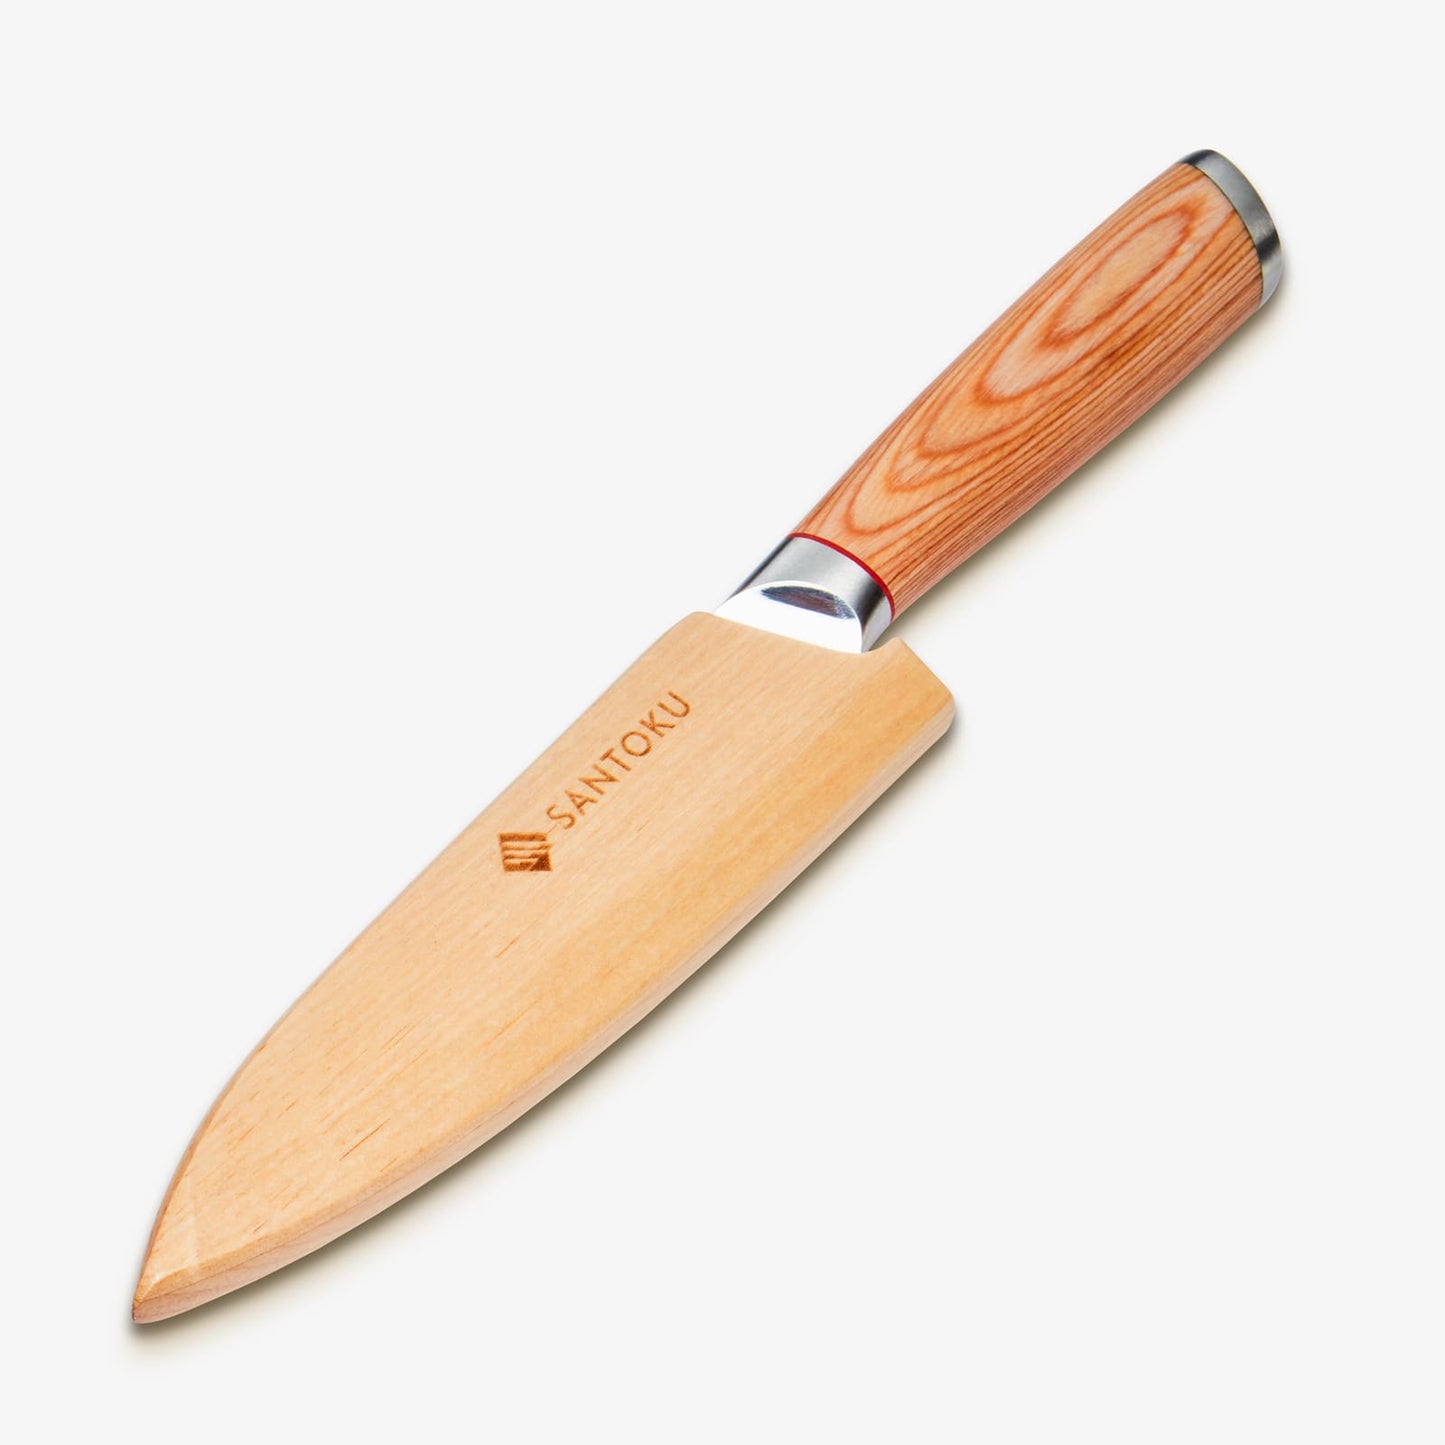 هاروتا (はるた)سكين متعدد الاستخدامات مقاس 5 بوصة